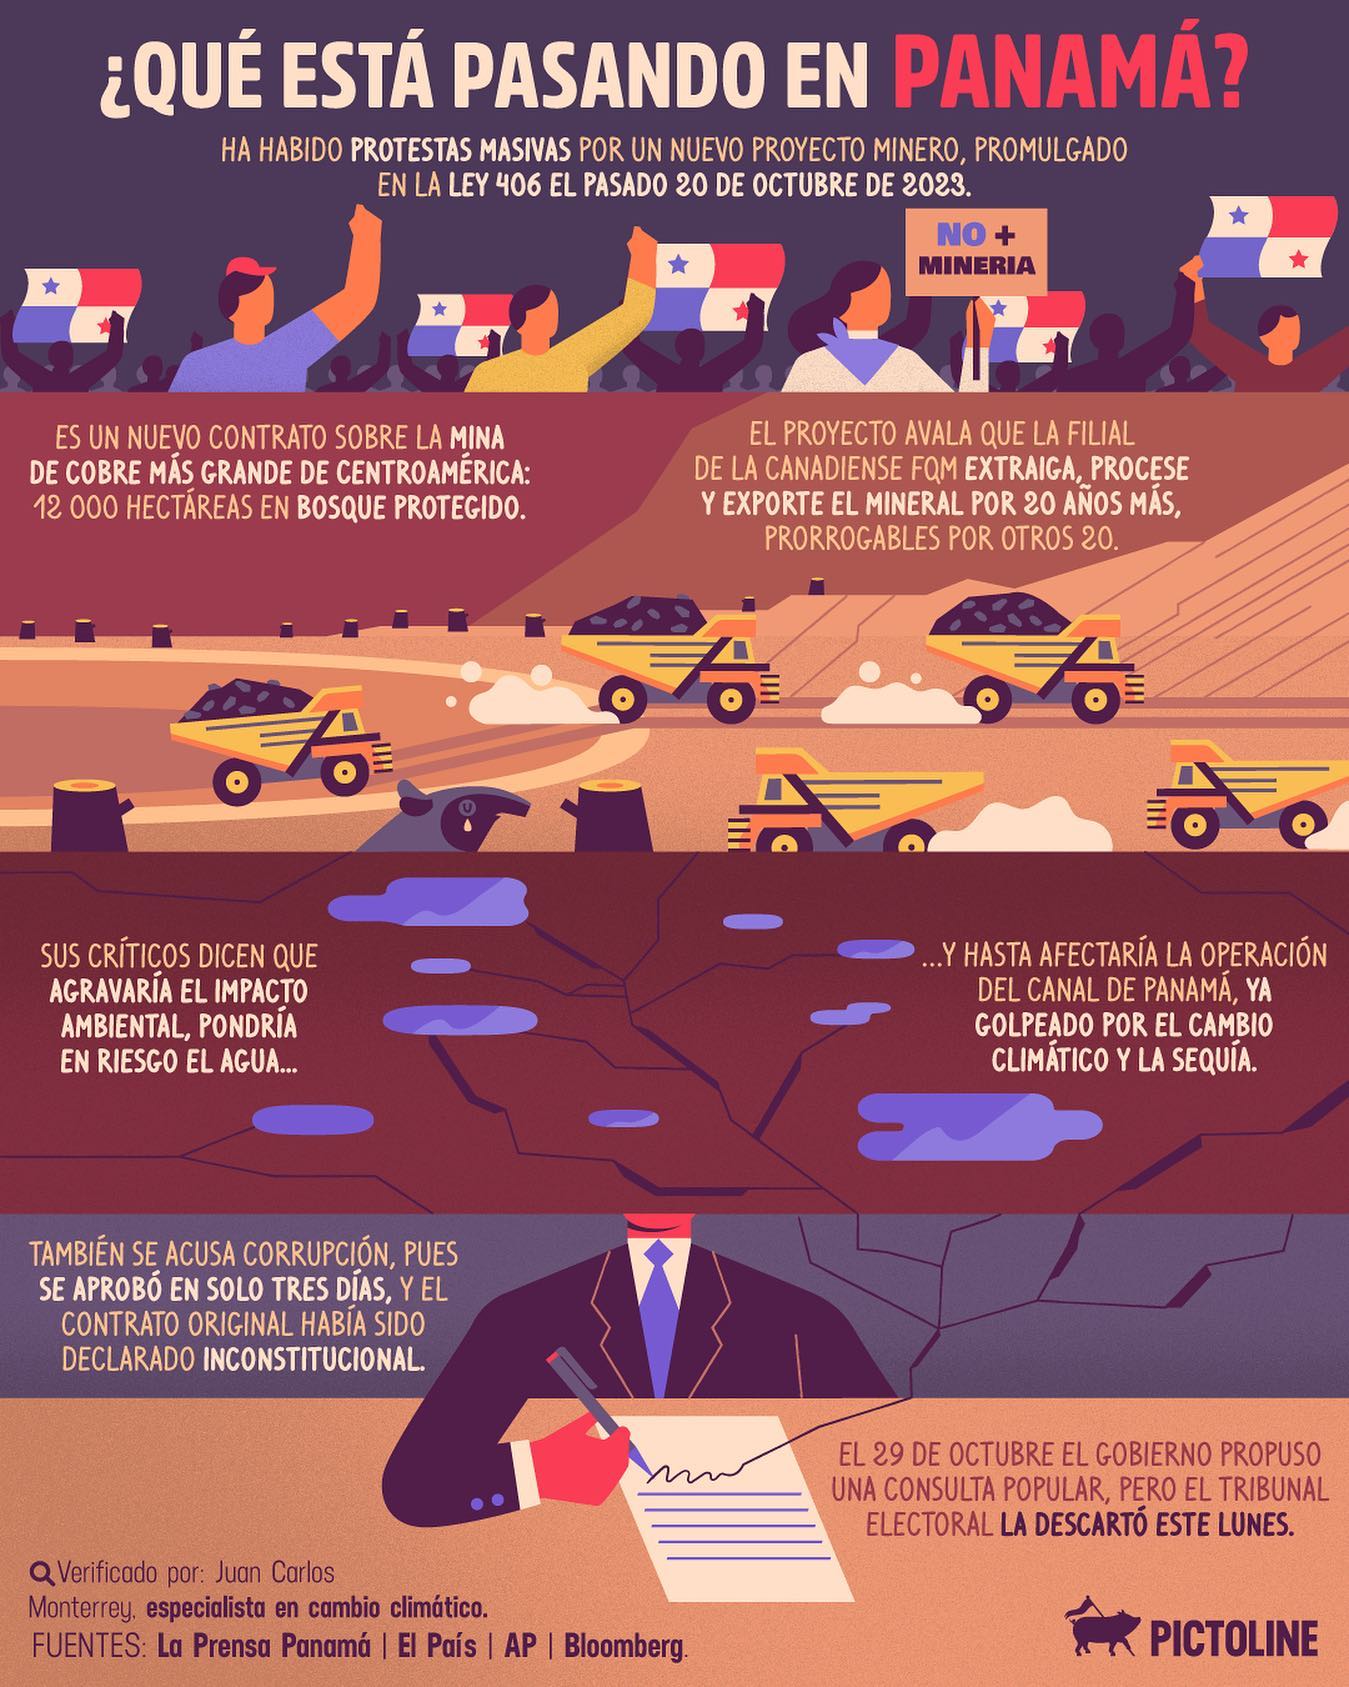 Un nuevo proyecto minero ⛏️ ha despertado el descontento social en Panamá 🇵🇦 #Panama #Protest #Mining